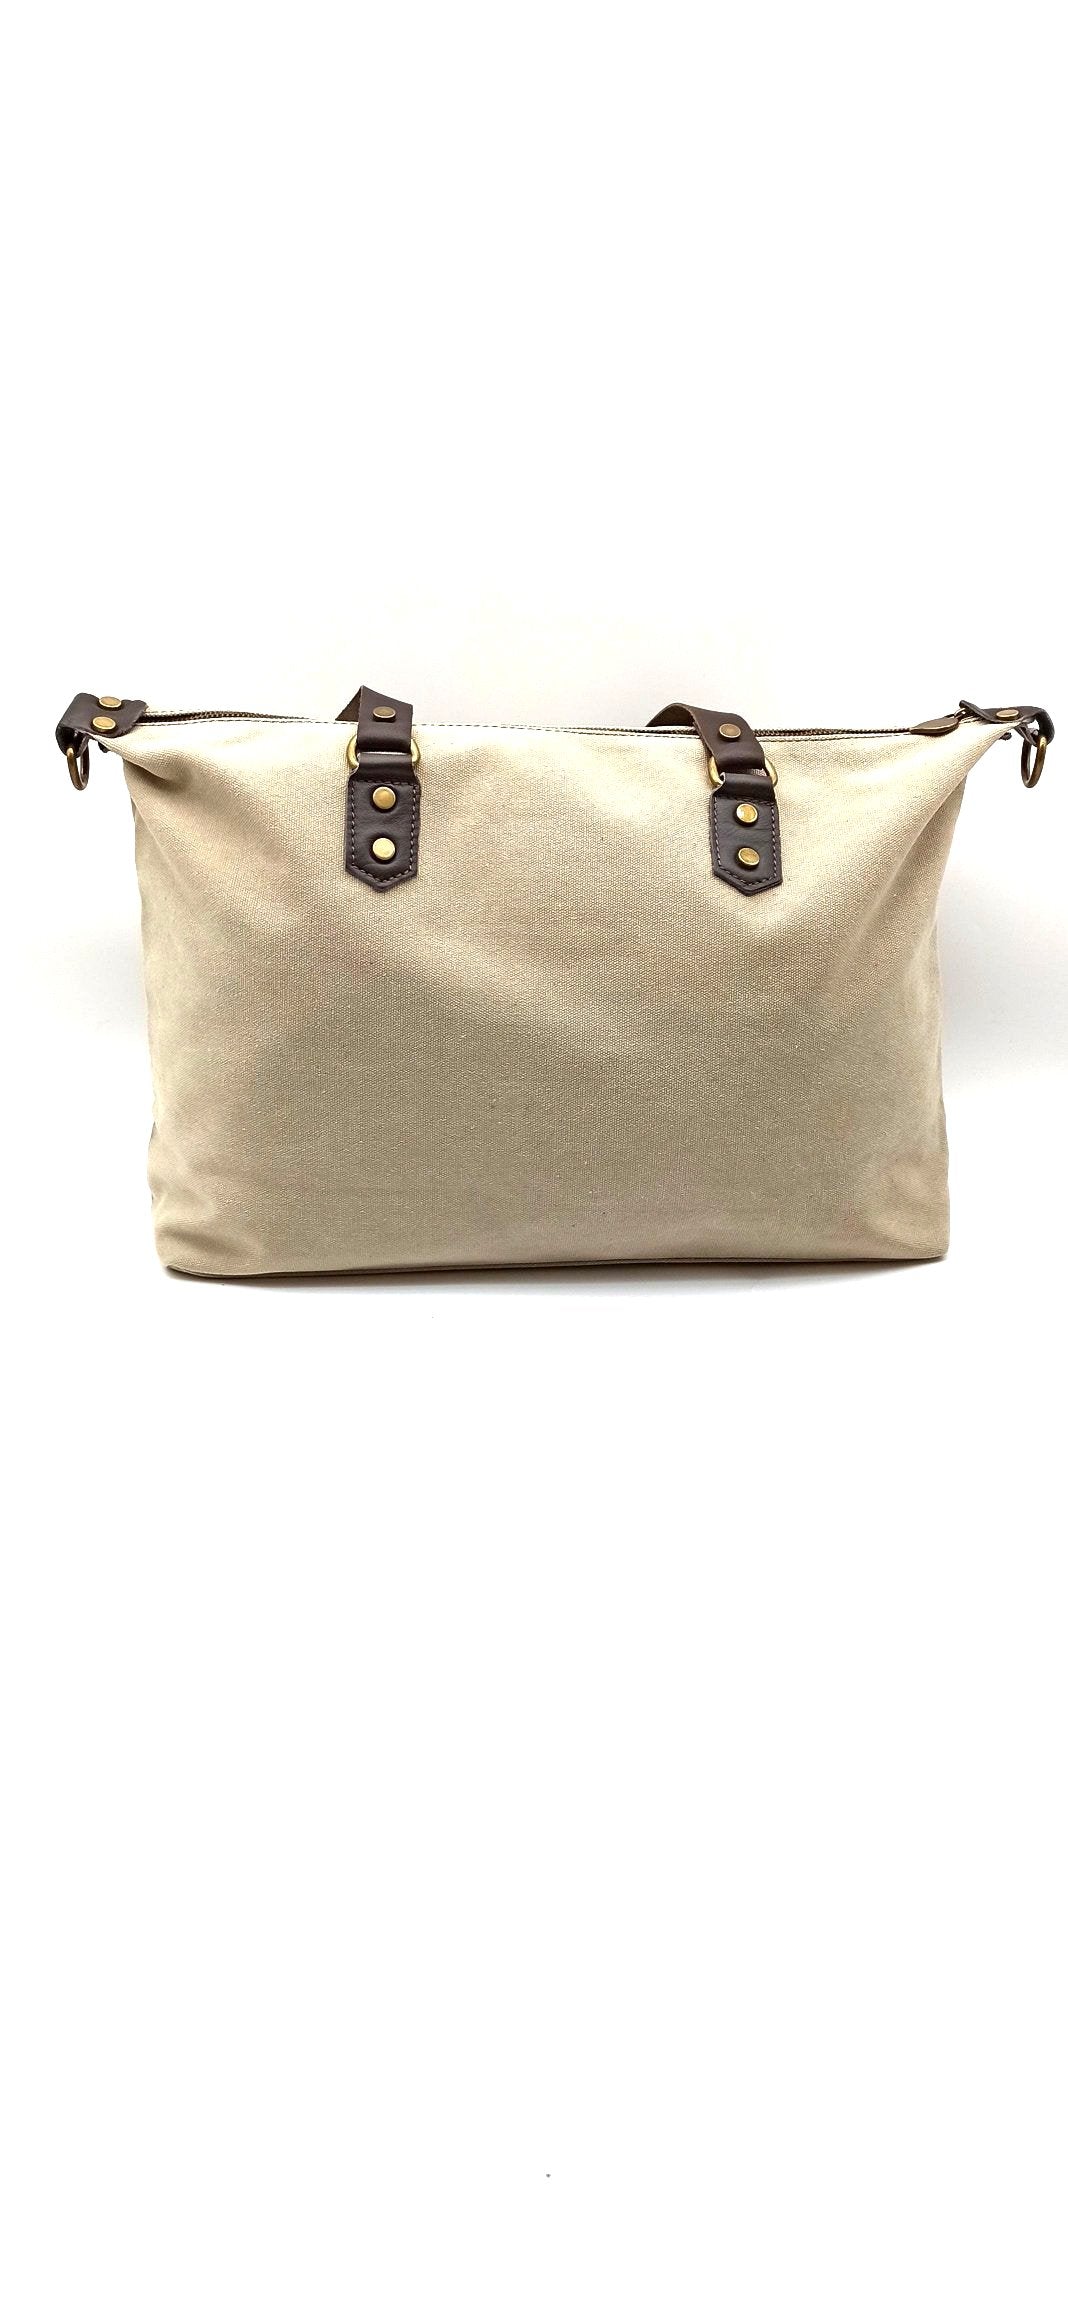 Baggy sac à bandoulière shopper unisexe en coton et cuir Qoolst pour femmes et hommes